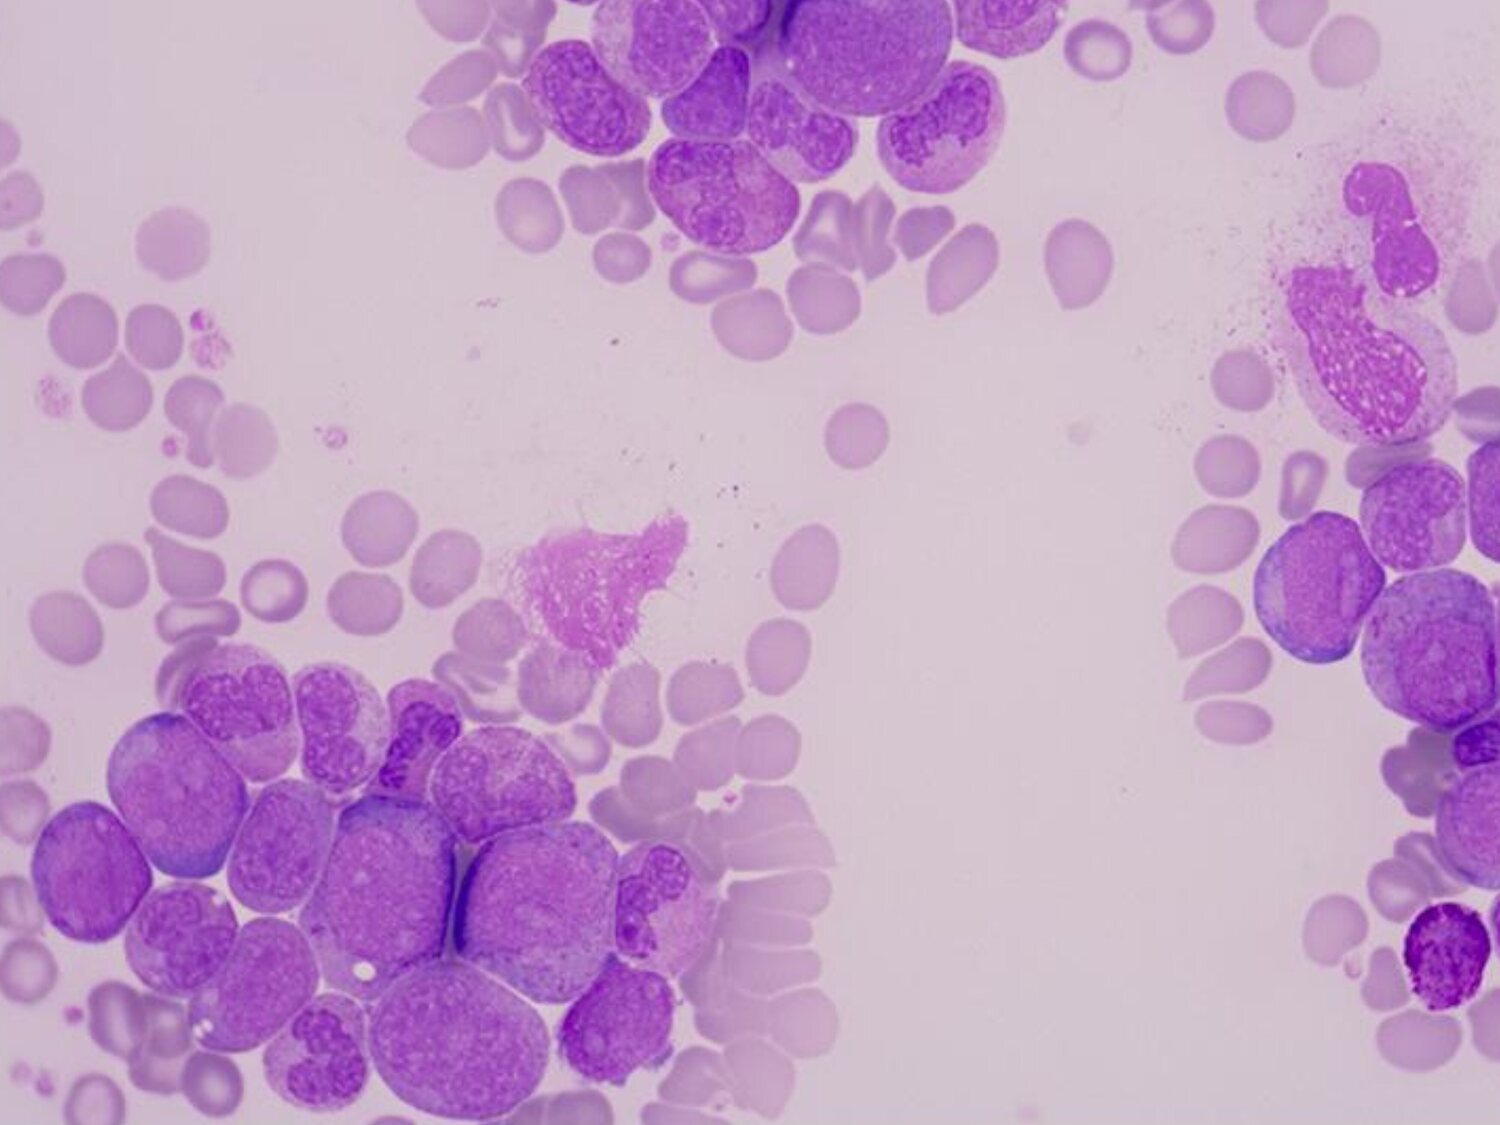 Un medicamento experimental ha logrado curar la leucemia avanzada en 18 pacientes